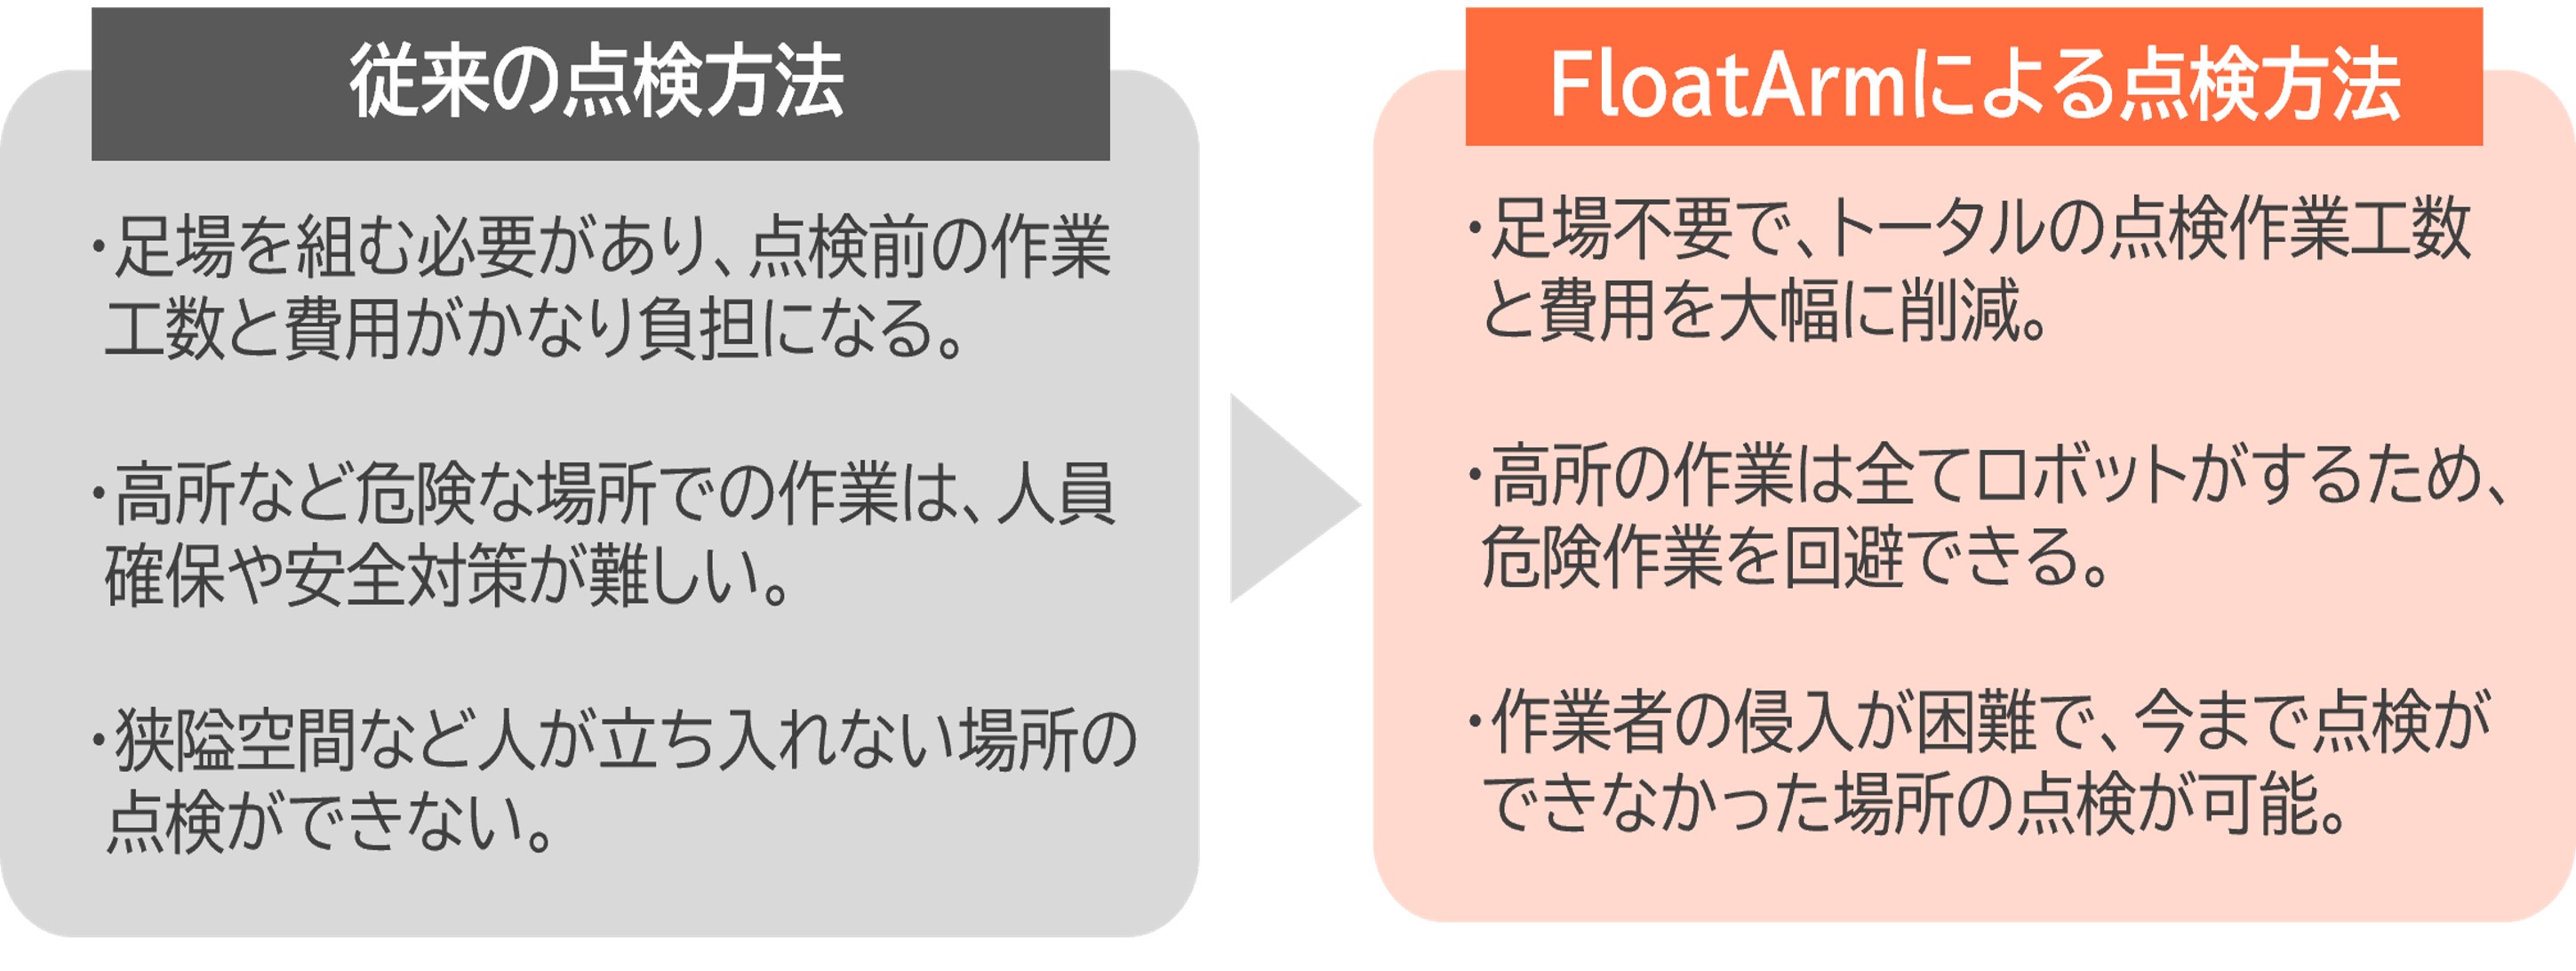 FloatArm従来方式との比較